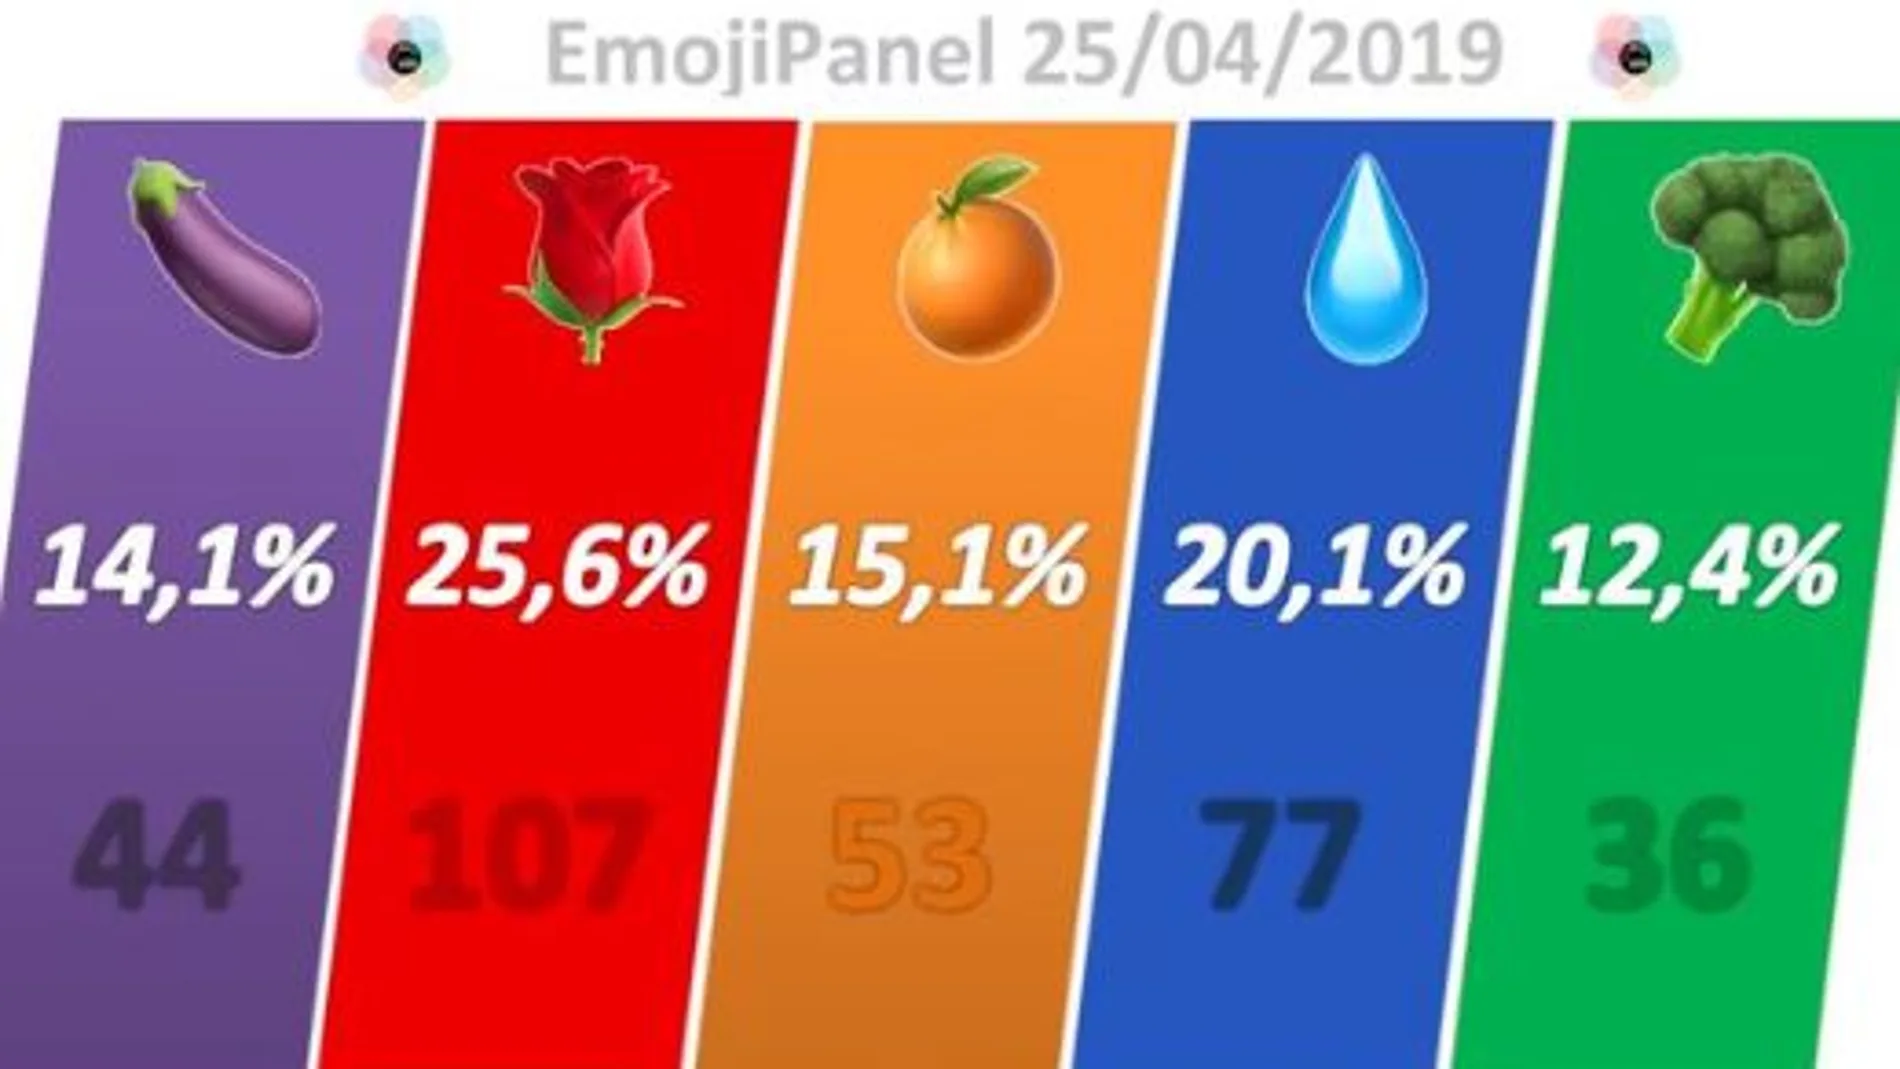 #emojiPanel publicado por Electomania